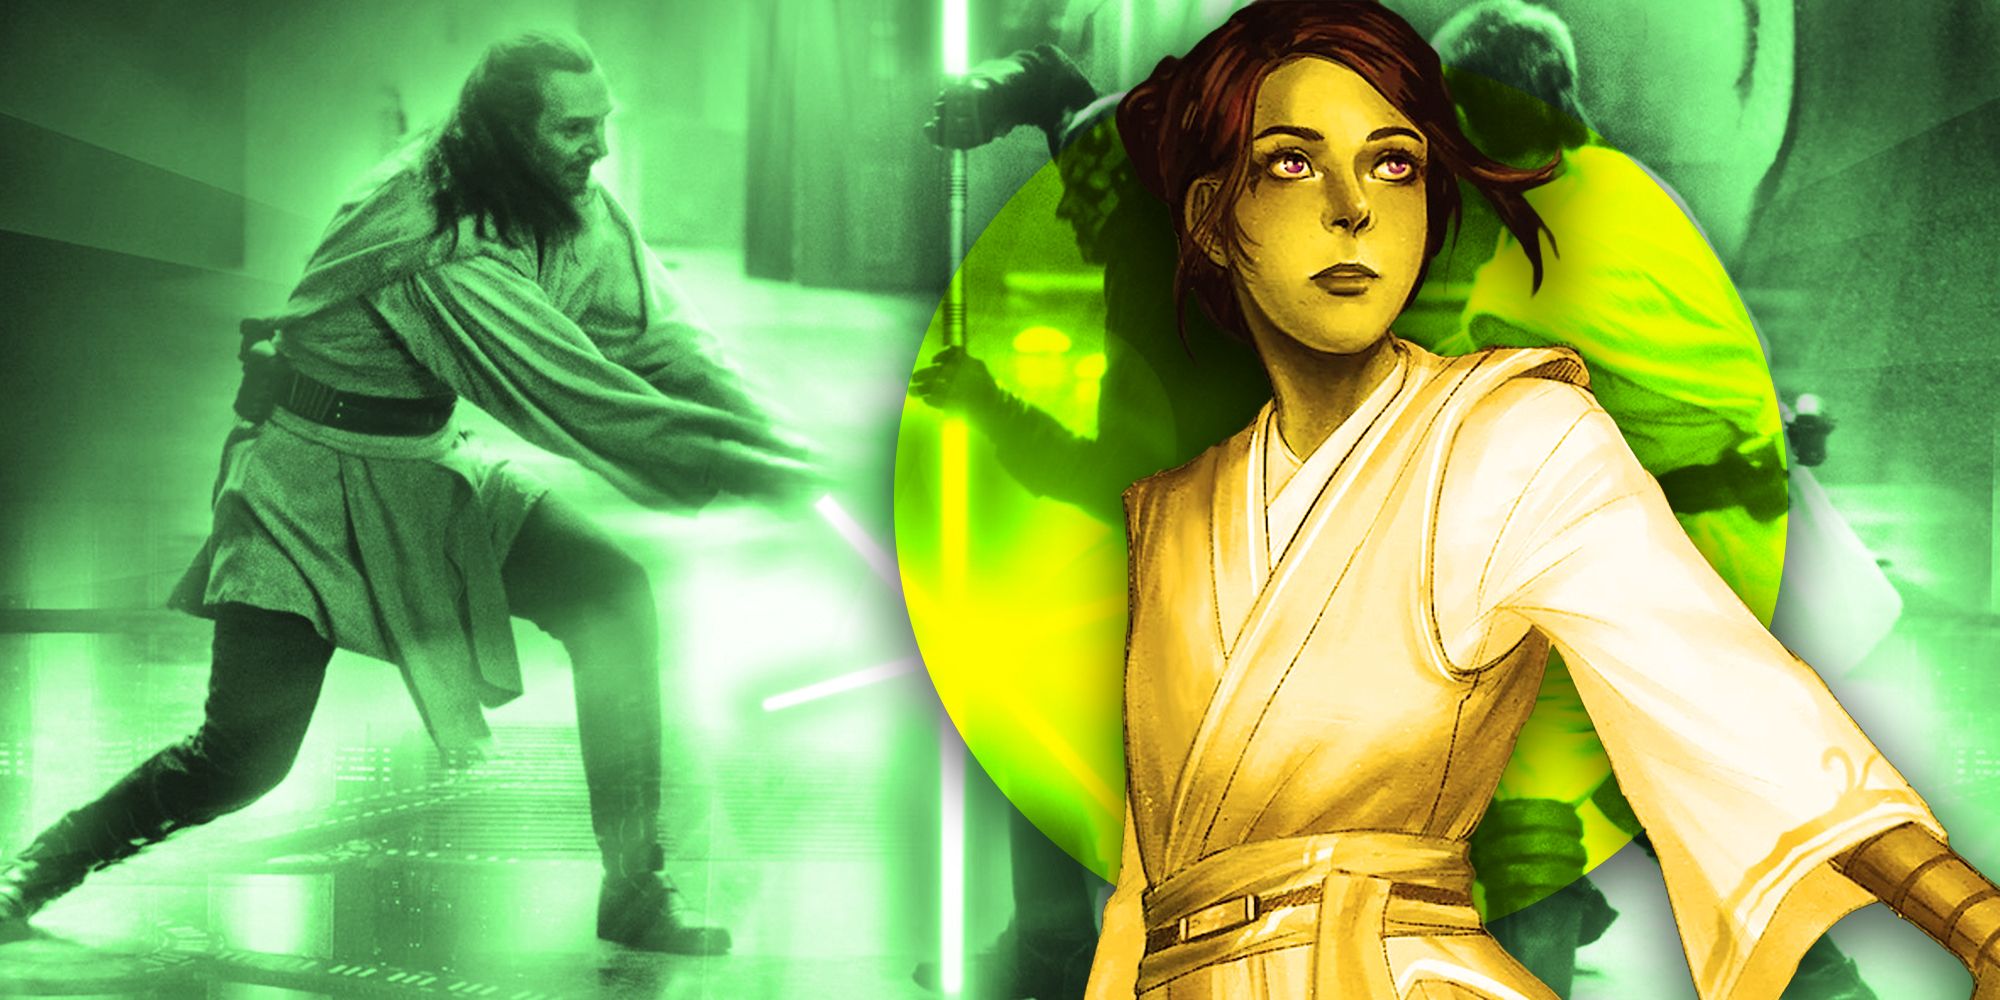 La sinopsis oficial de la trama de The Acolyte muestra “un guerrero peligroso” del pasado de un maestro Jedi